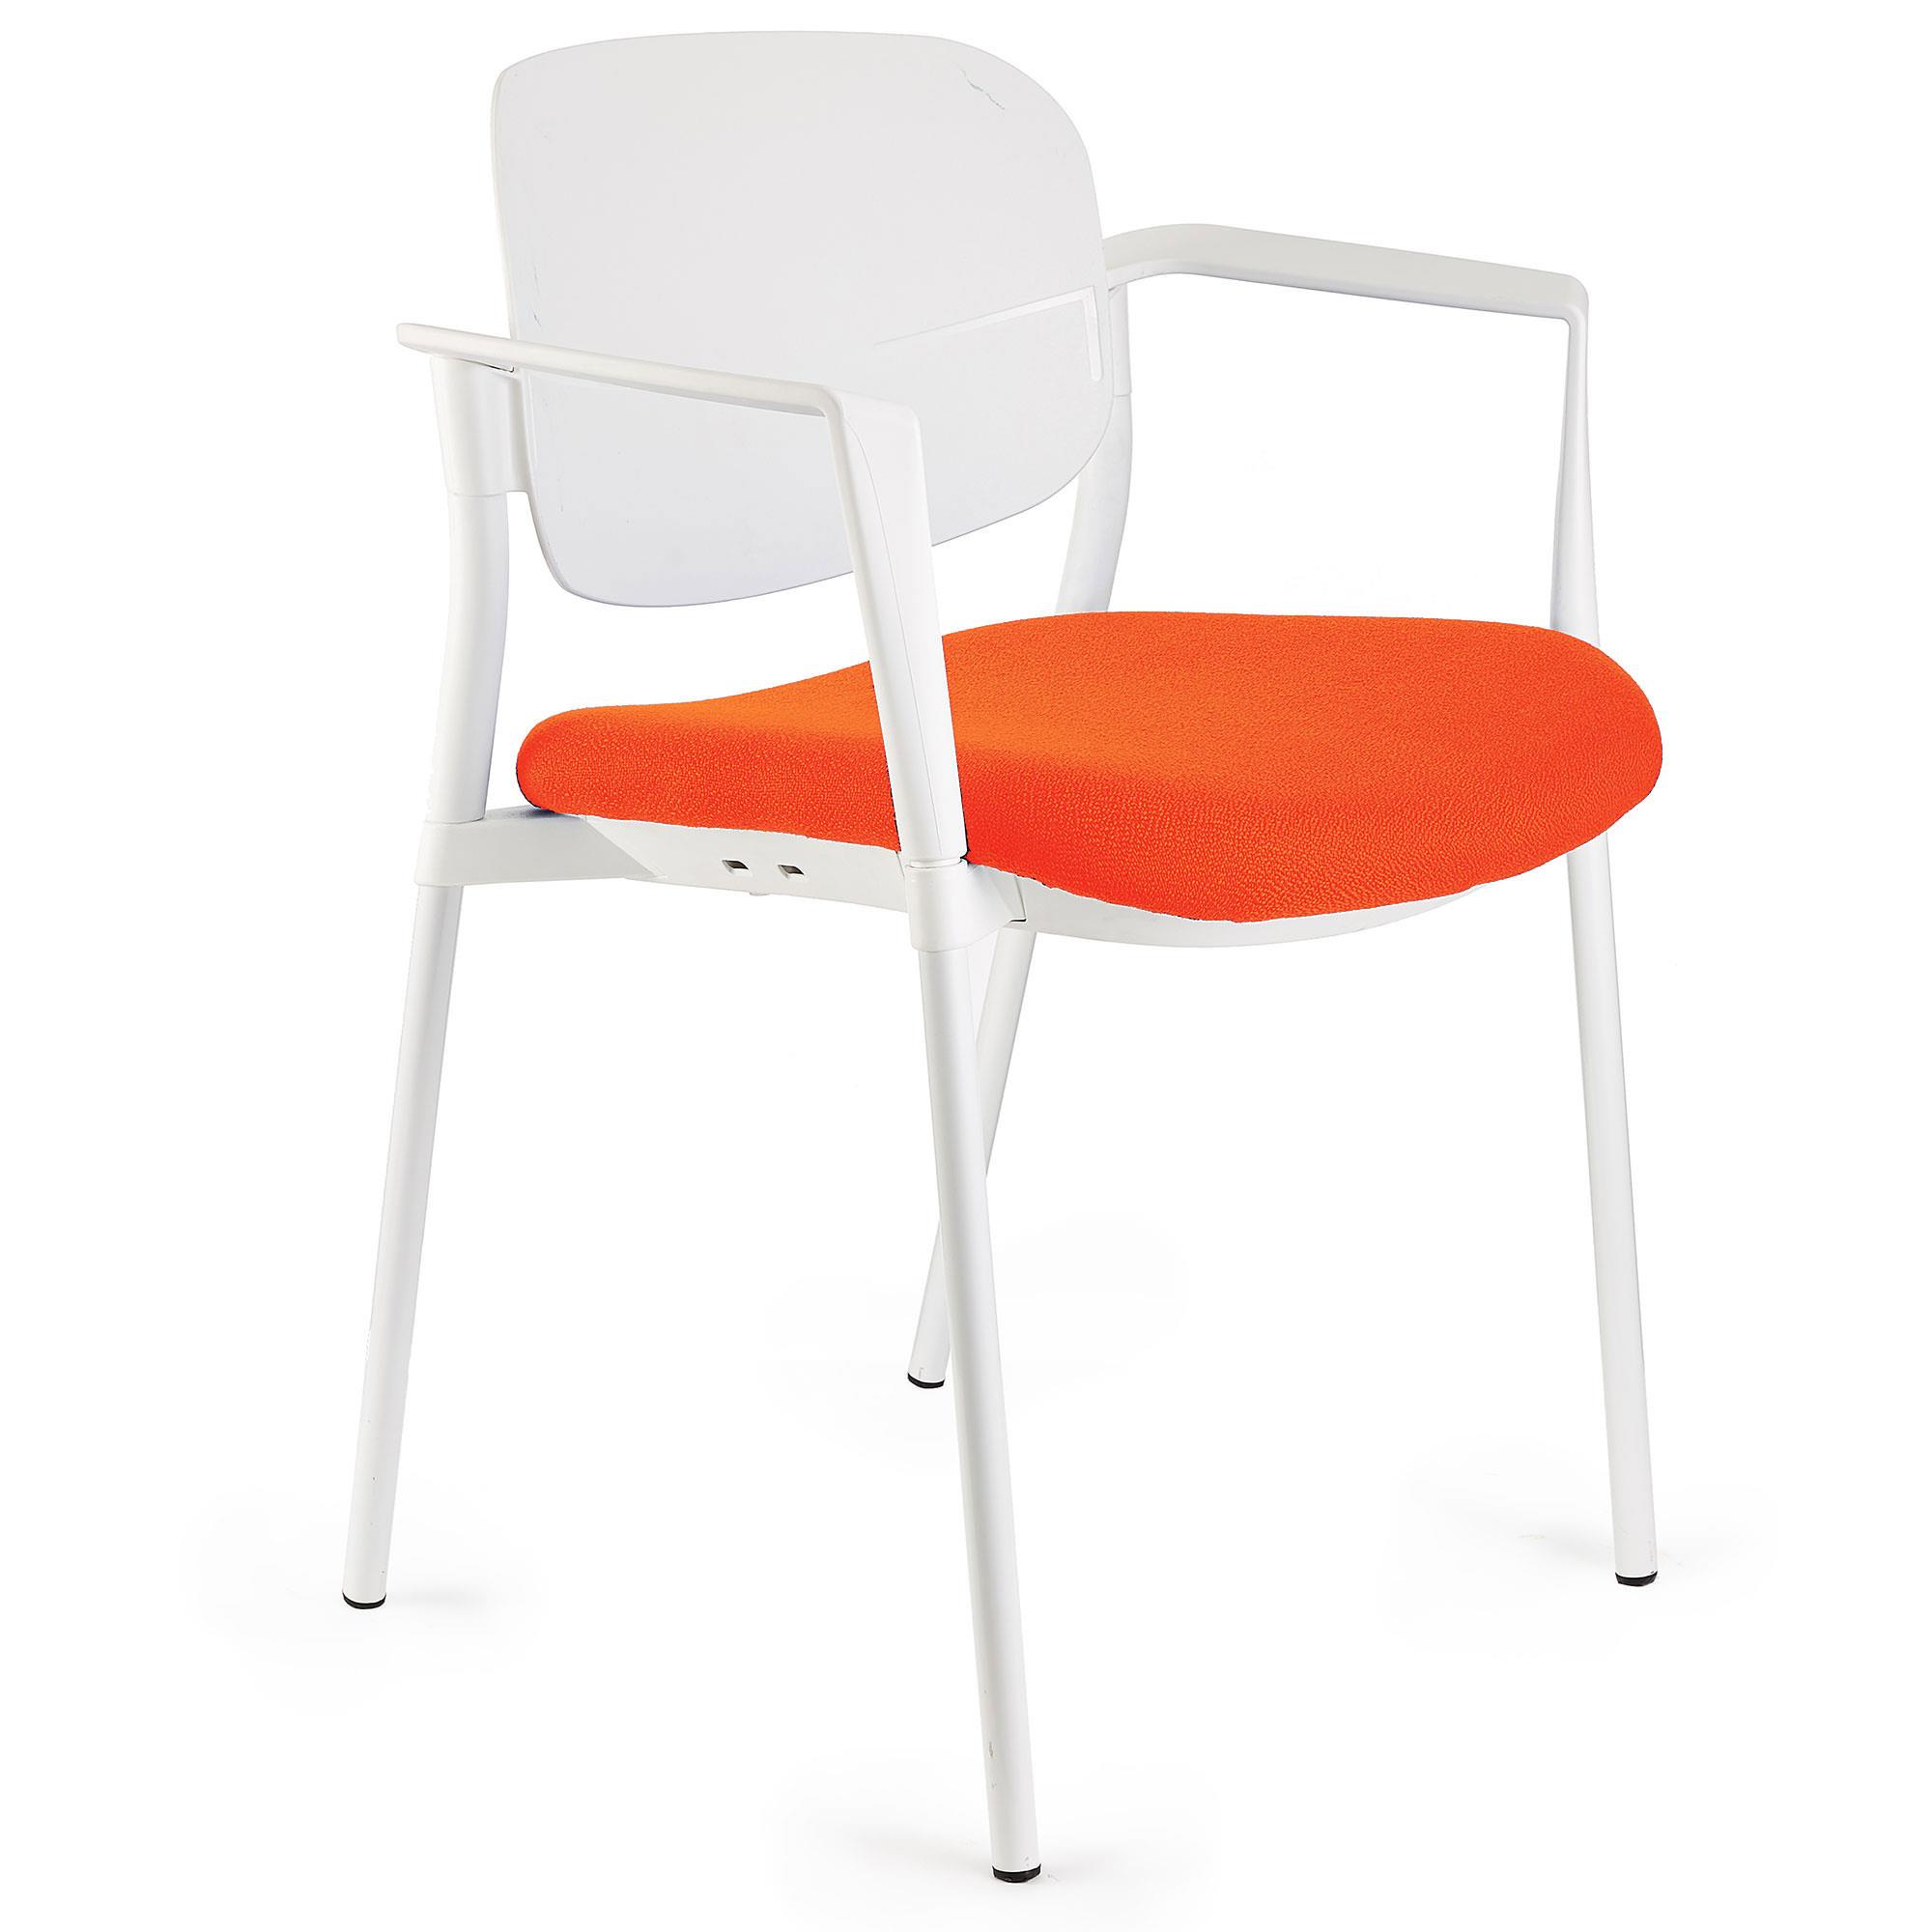 Chaise de réunion ERIC, Commode et Pratique, Empilable, Orange